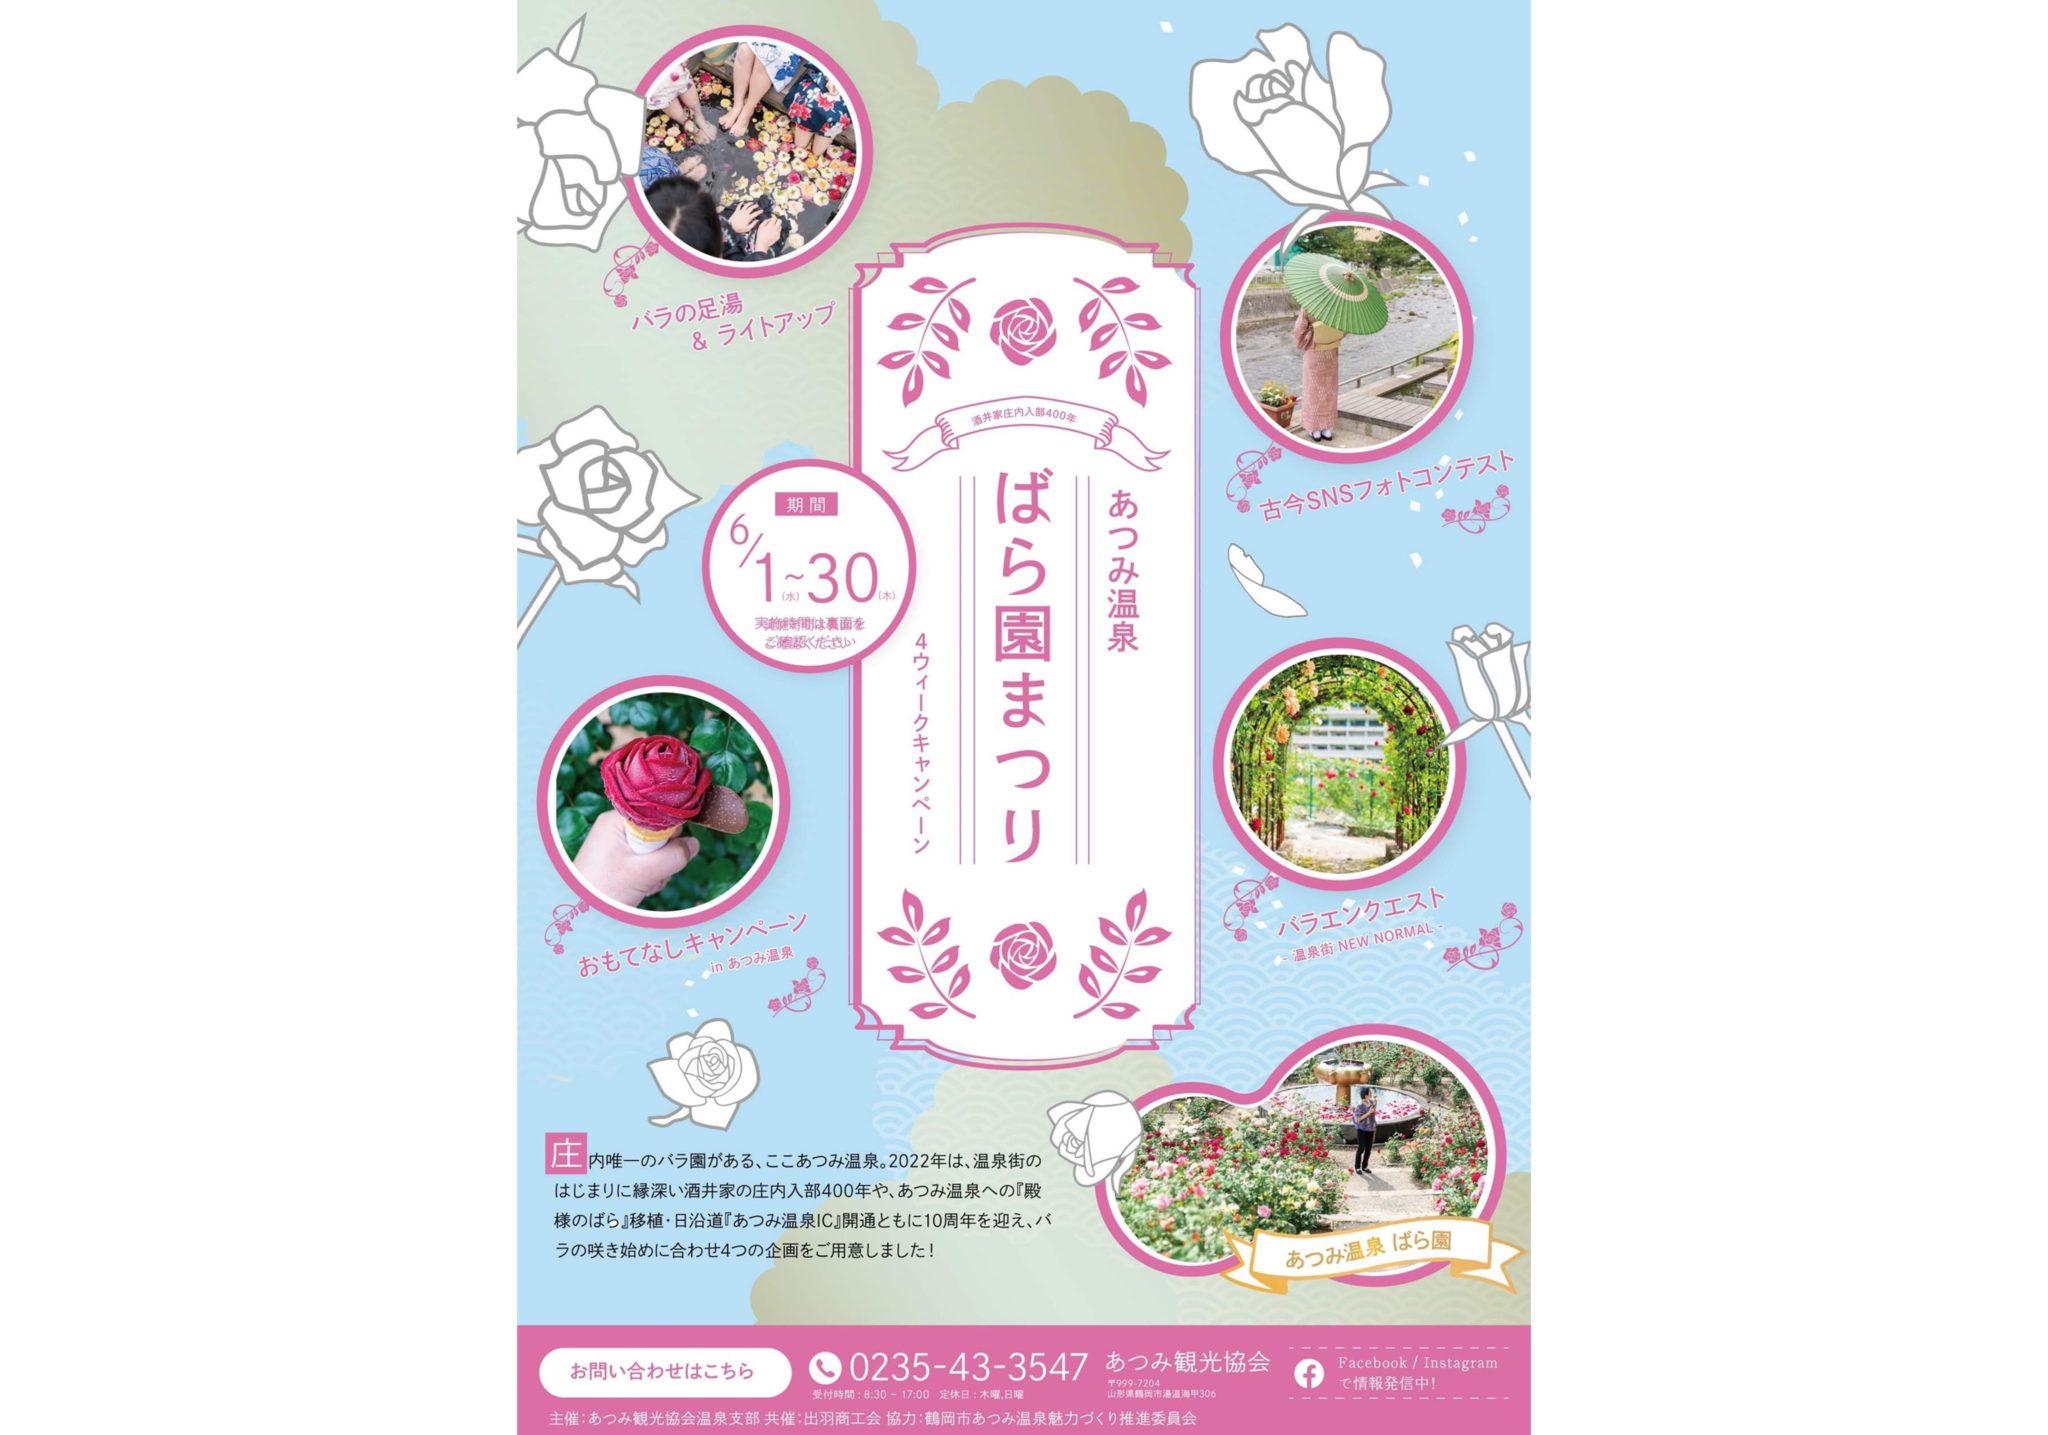 Atsumi Onsen Rose Garden Festival 2022